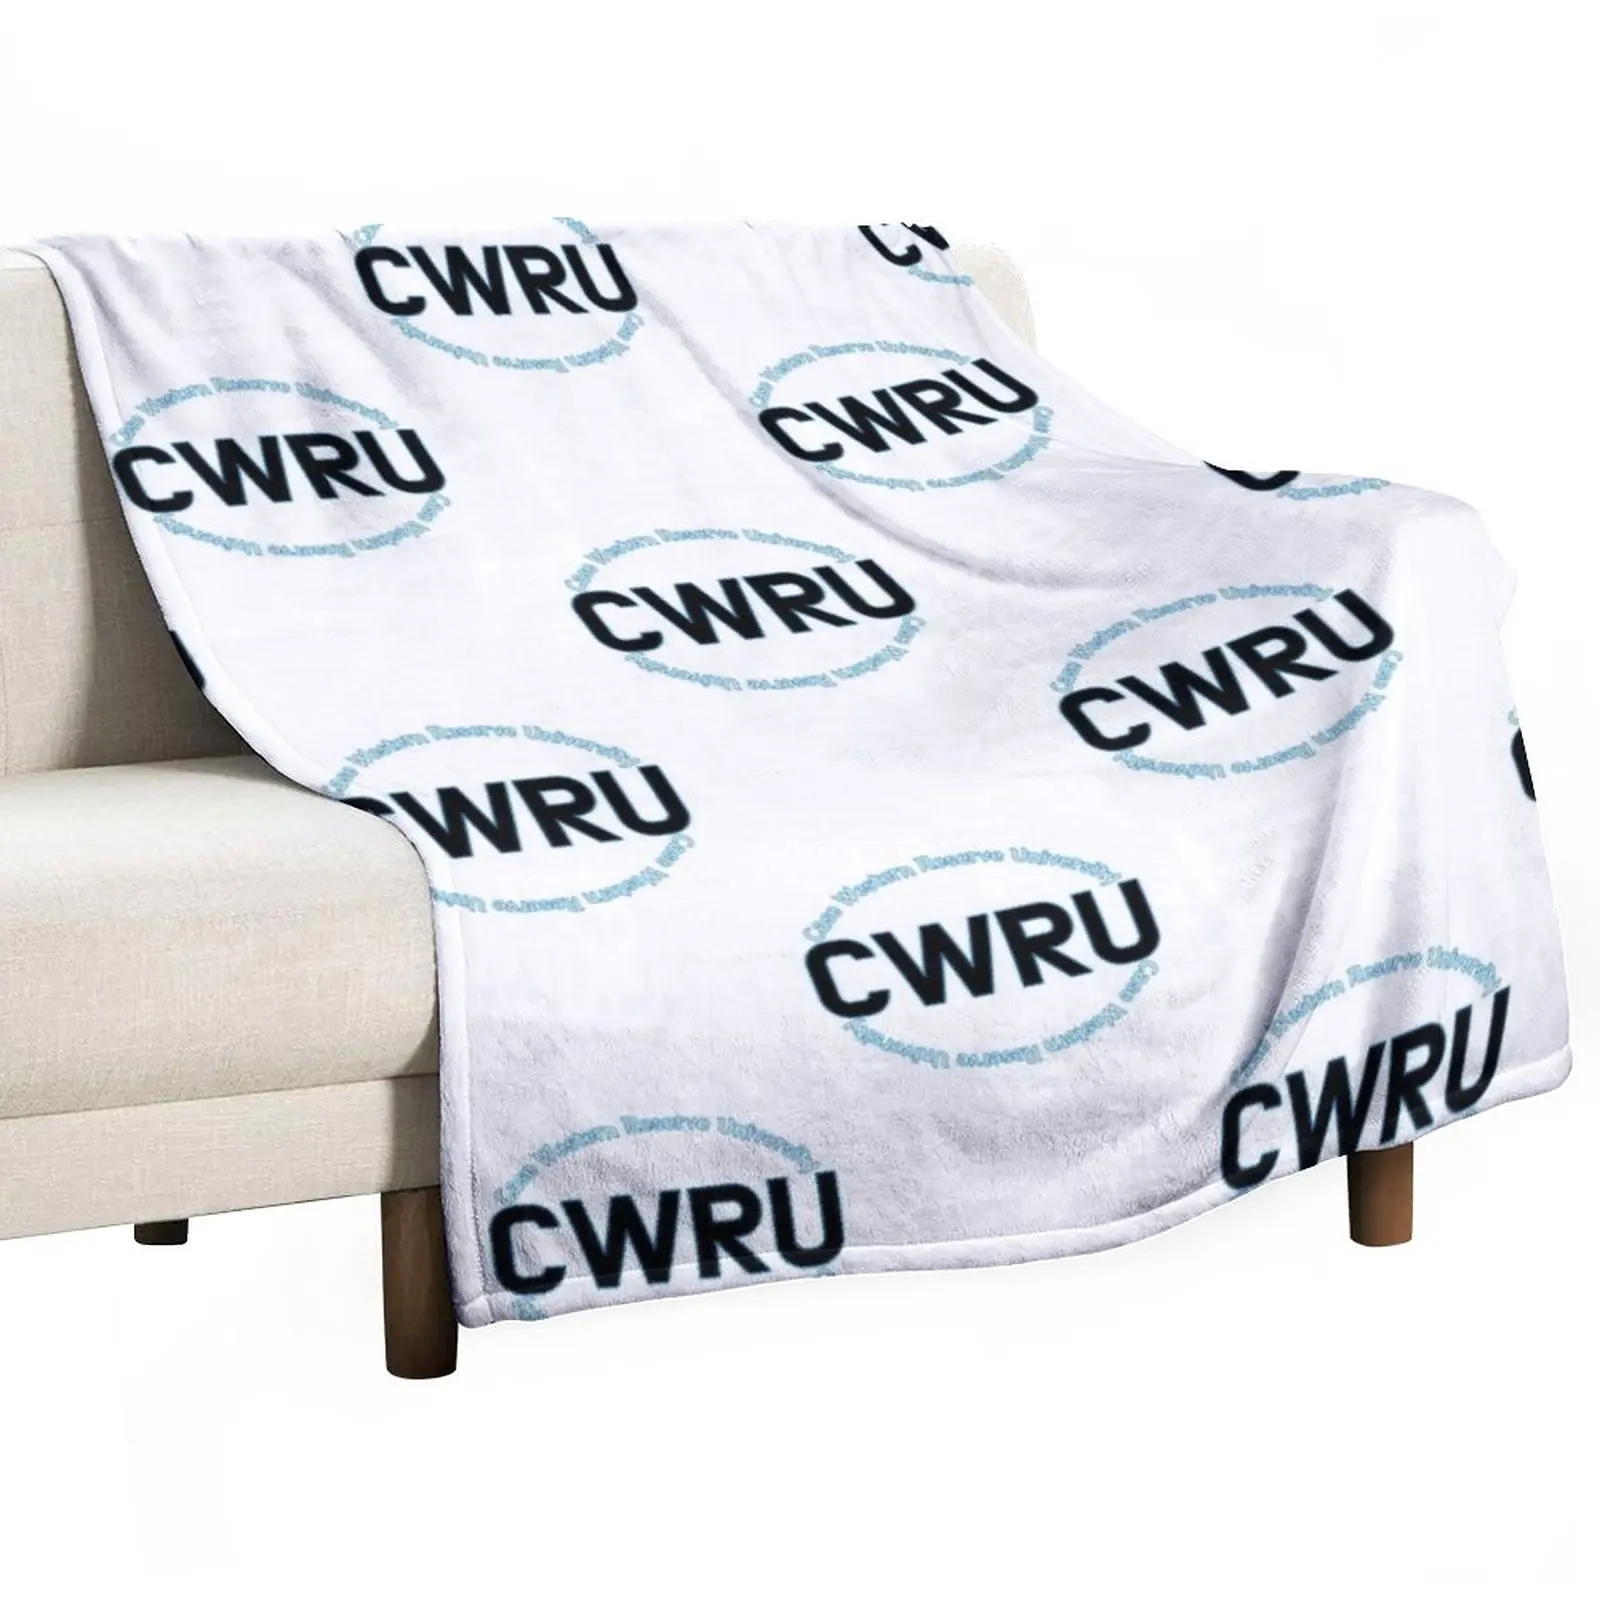 

Чехол Западный резерв университетское одеяло тепловые одеяла для путешествий винтажное одеяло мягкие одеяла для кровати одеяло для пикника